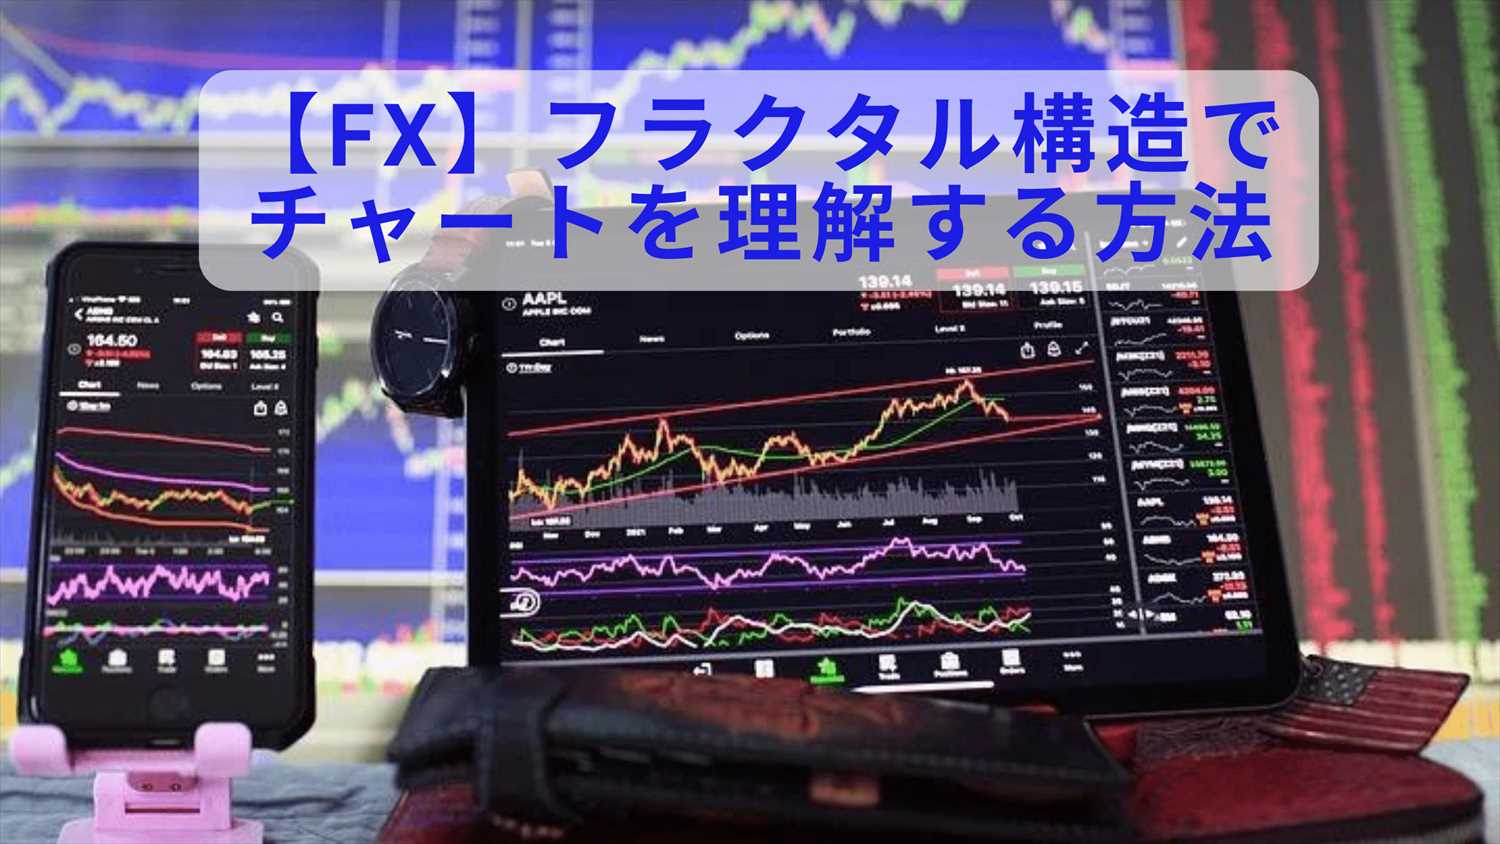 FX フラクタル構造でFXチャートを理解する方法